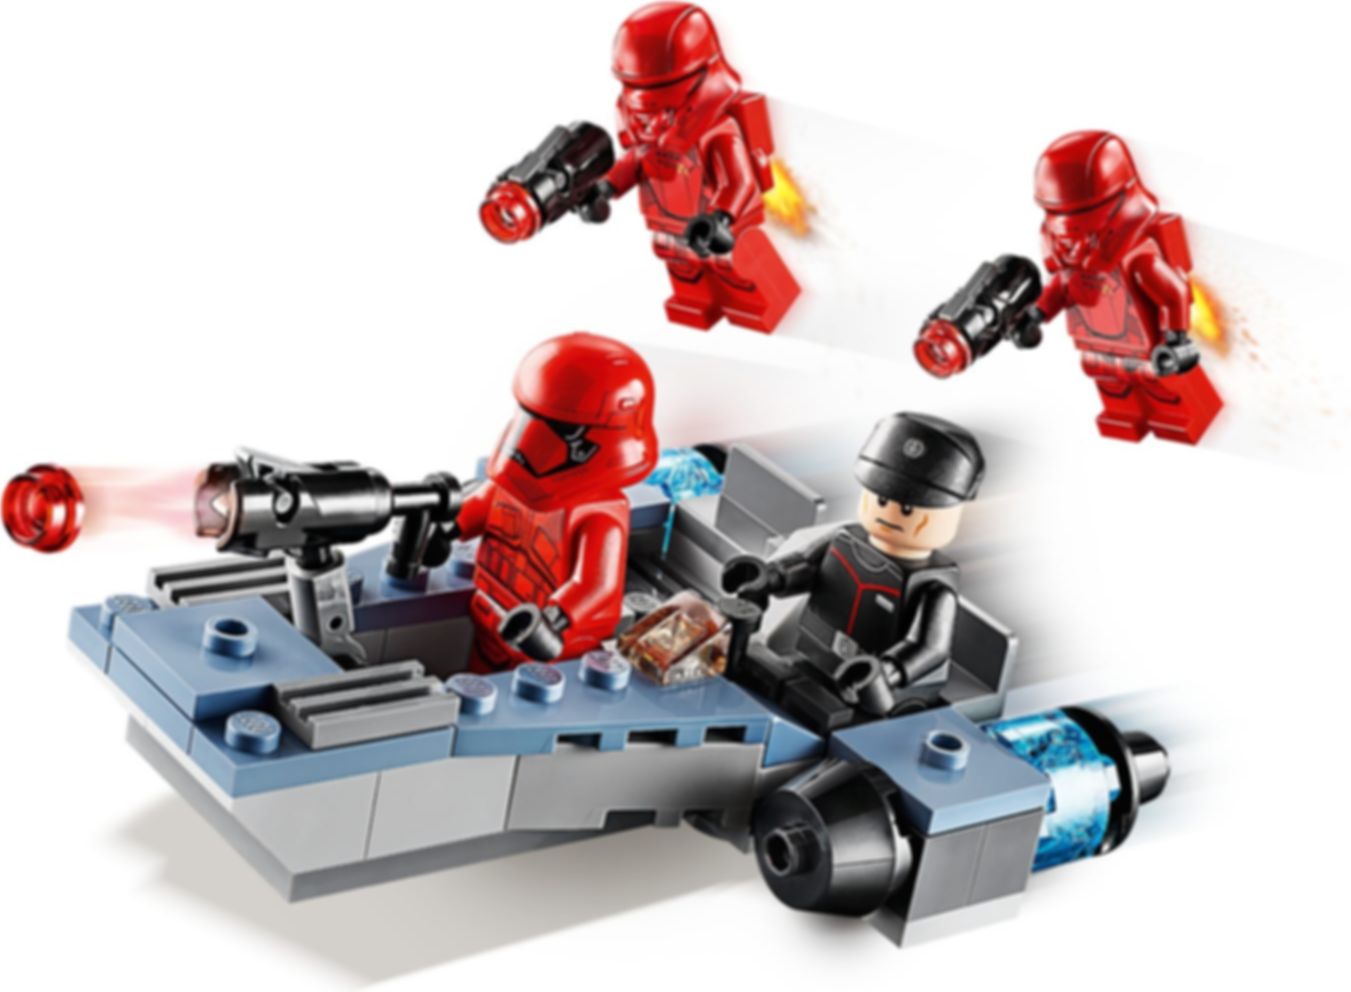 LEGO® Star Wars Pack de Combate: Soldados Sith jugabilidad